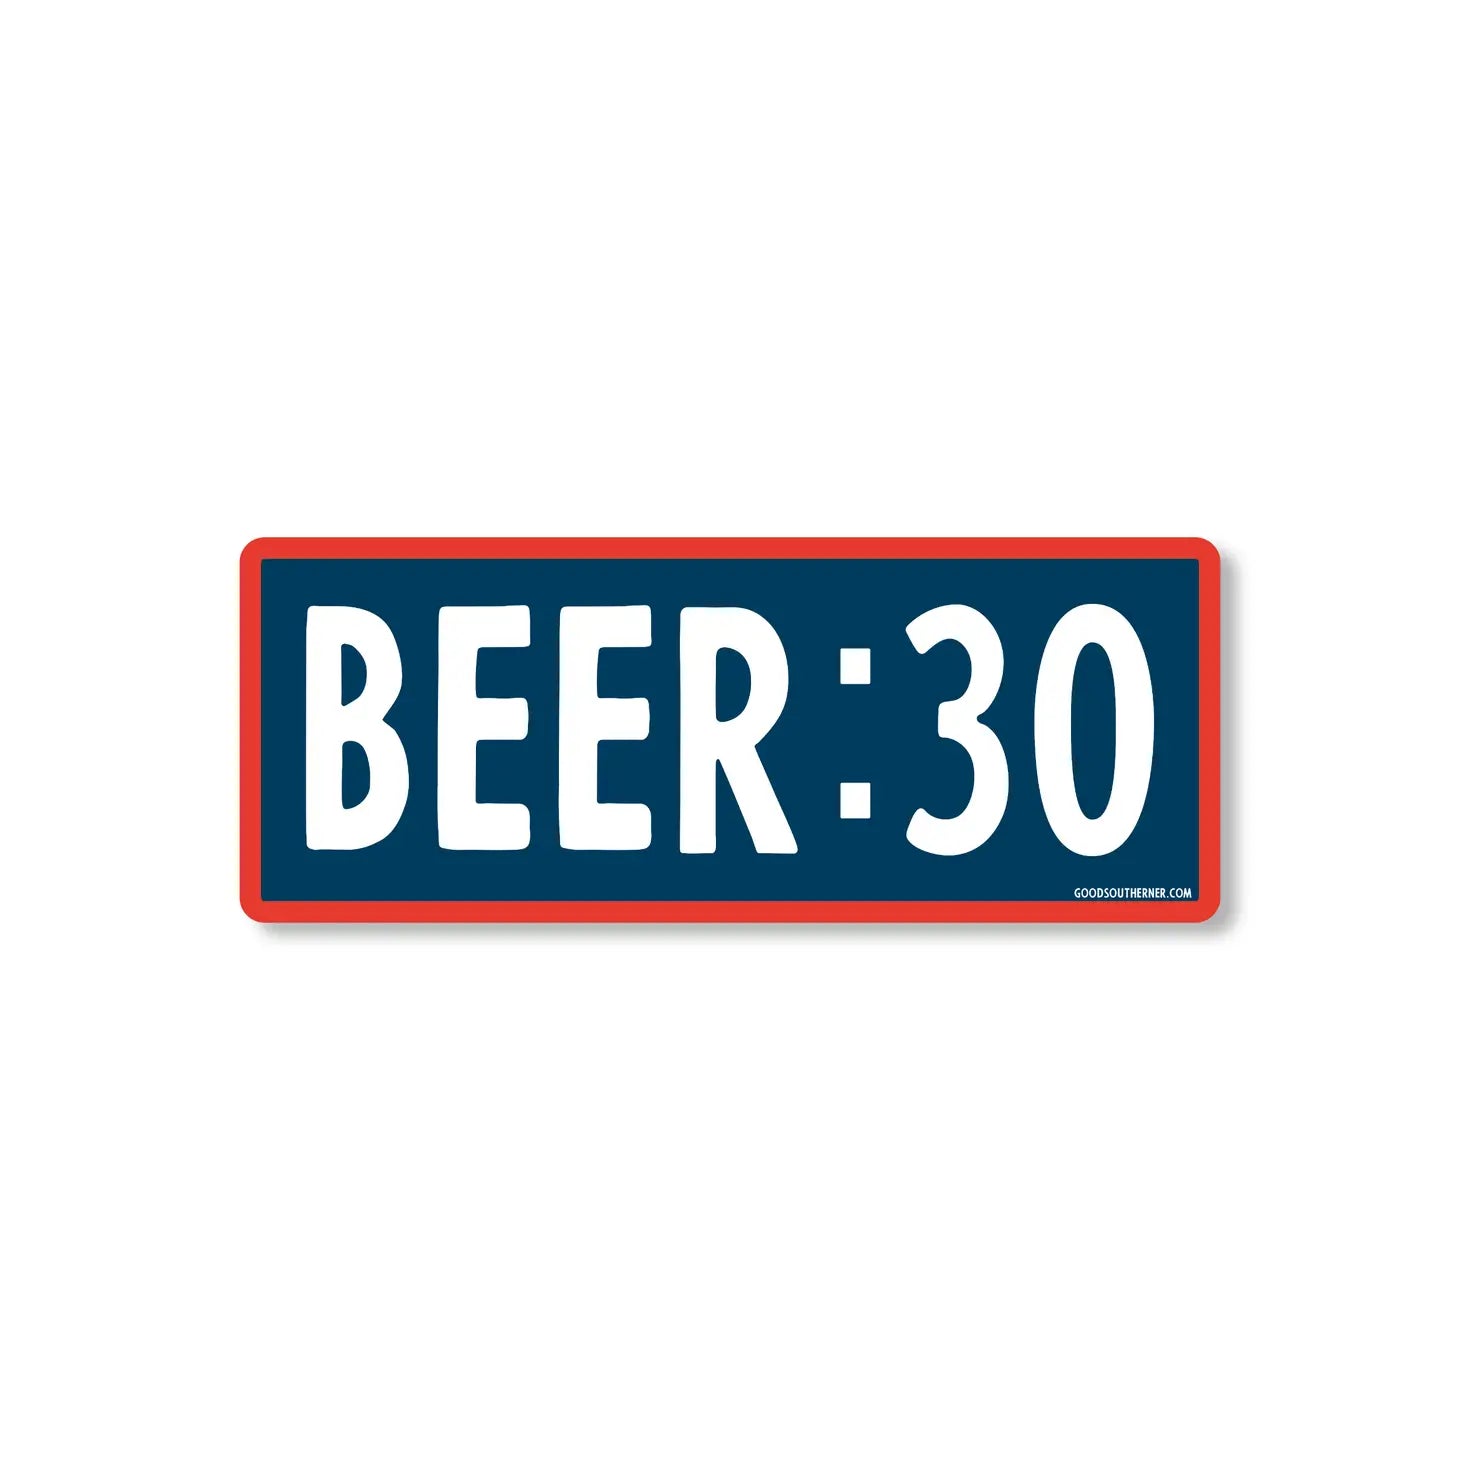 Beer: 30 Sticker